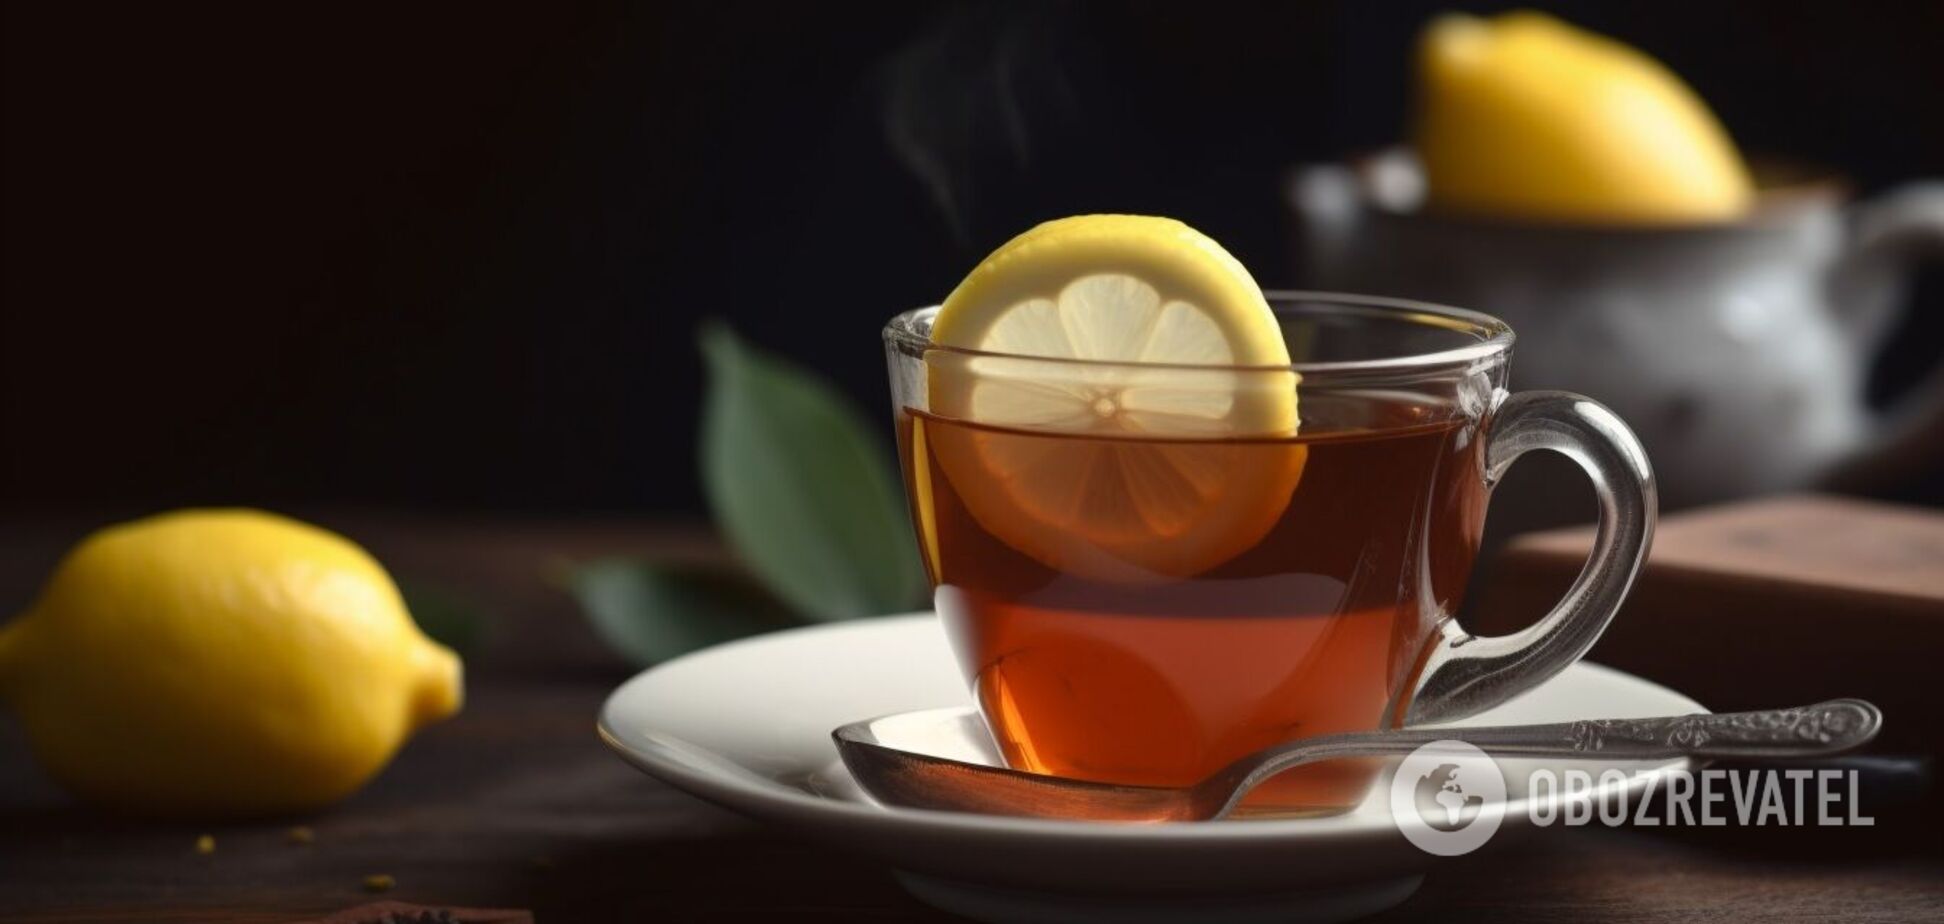 Правила чайного етикету: як правильно пити і чи можна їсти лимон з чашки